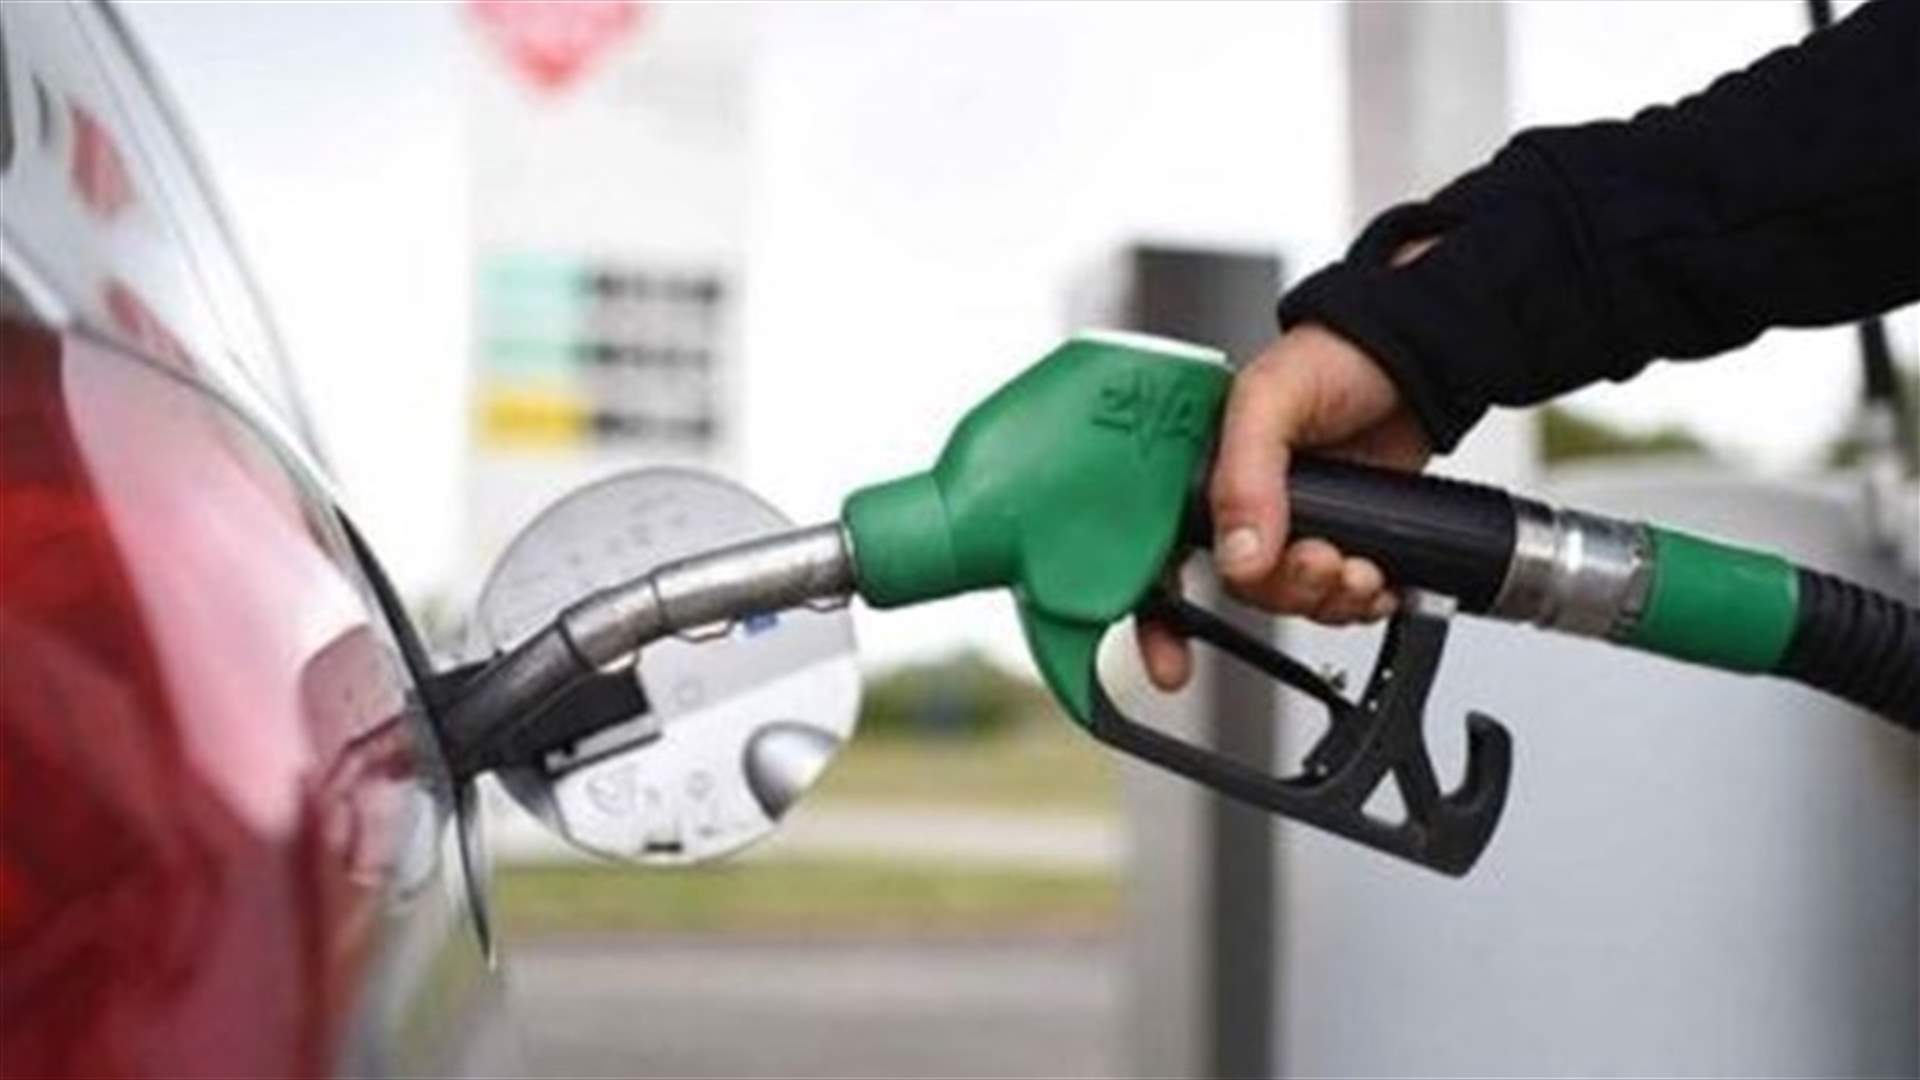 ارتفاع في أسعار المحروقات... كم بلغ سعر صفيحة البنزين؟